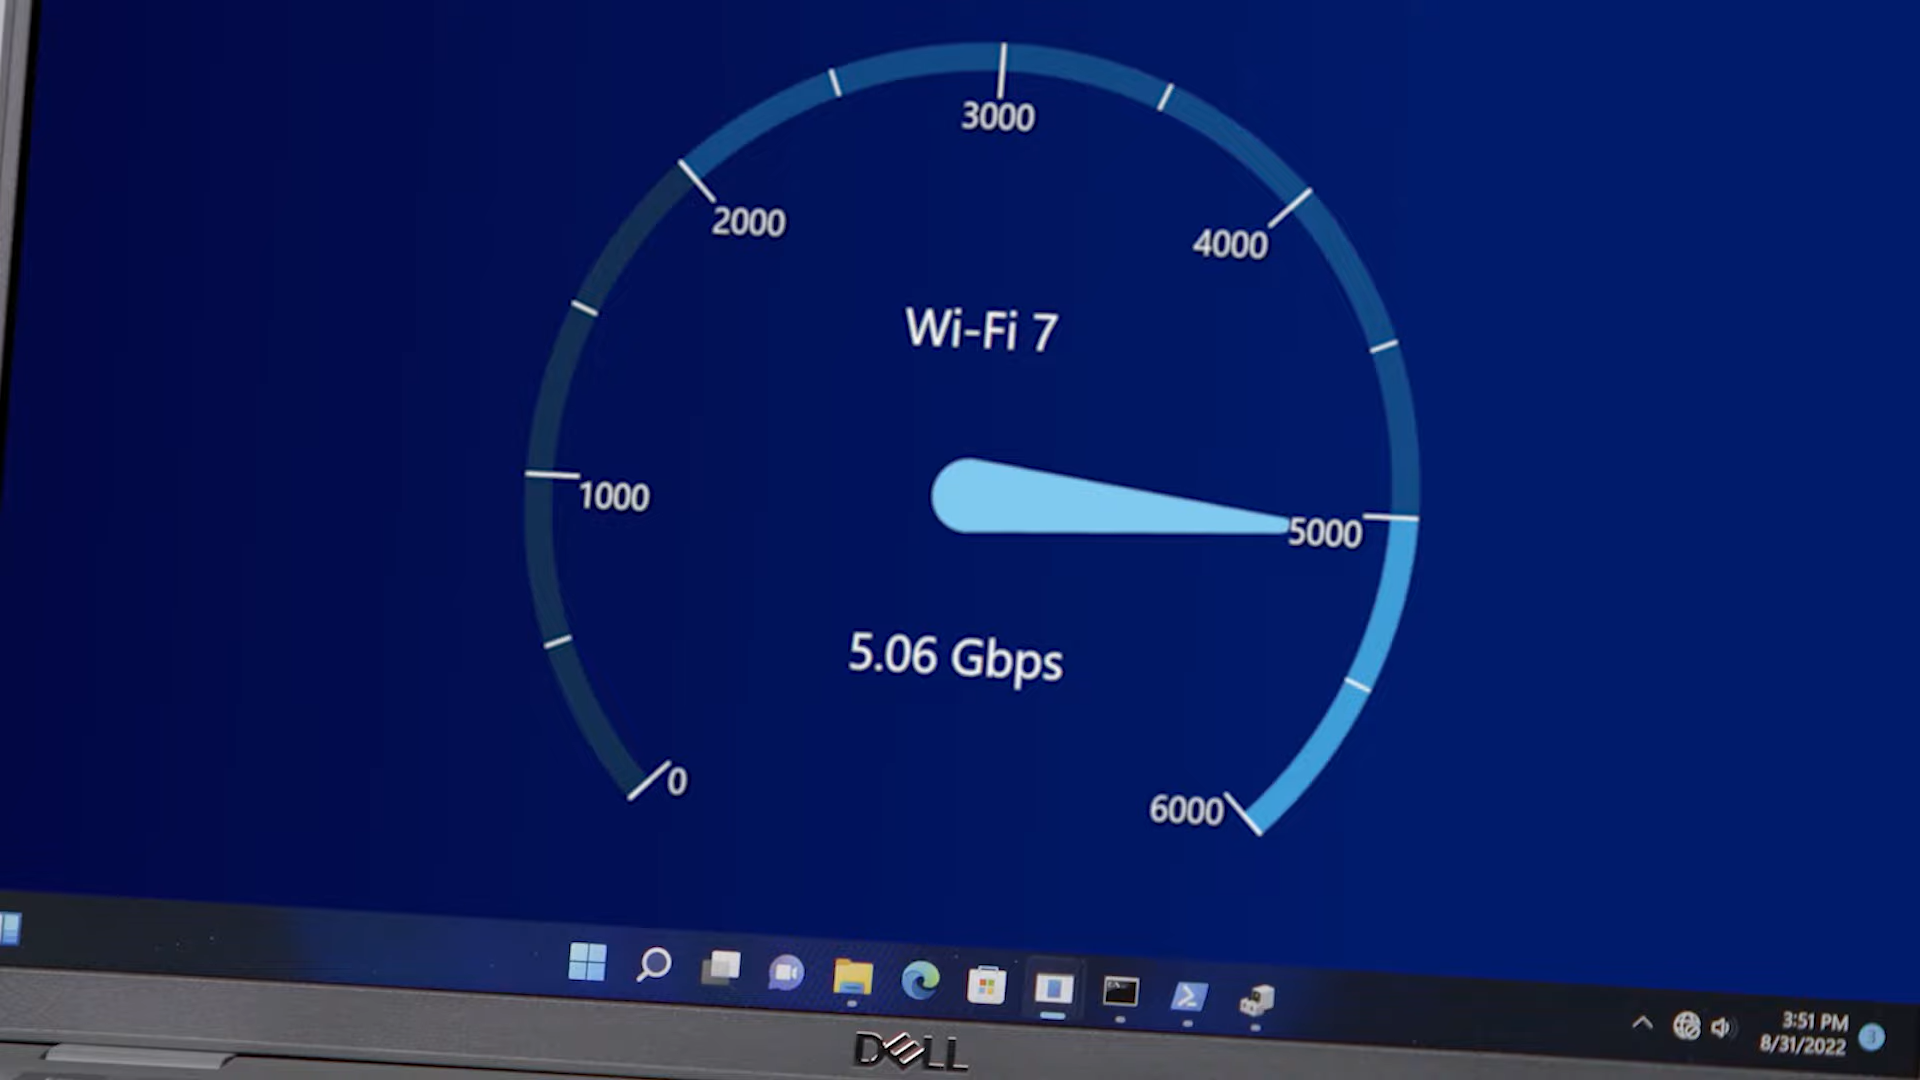 Intel et Broadcom présentent leur Wi-Fi 7 avec des vitesses supérieures à 5 gigabits par seconde